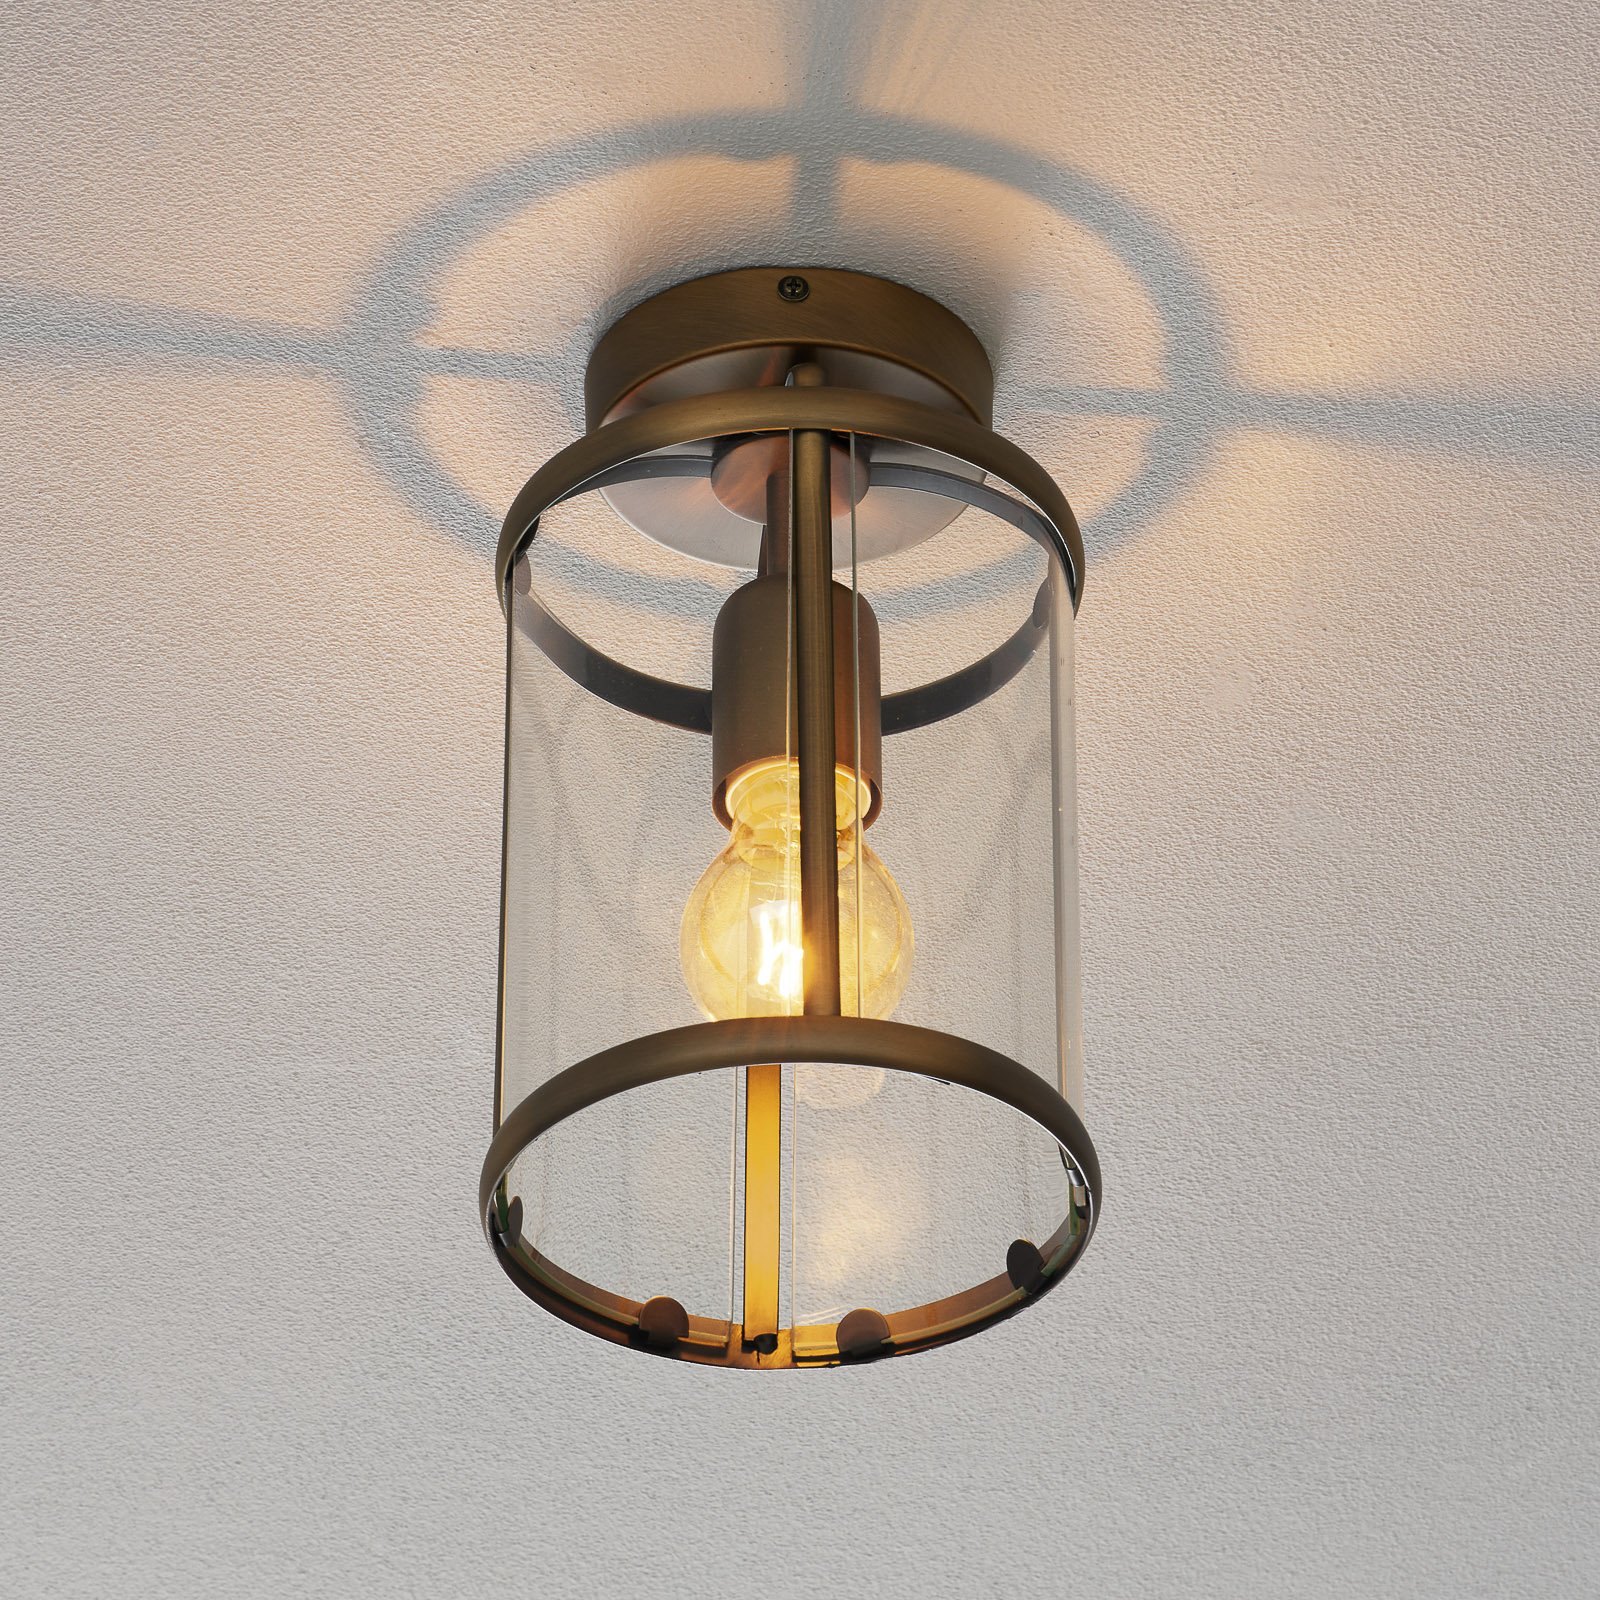 Appealing Pimpernel ceiling light